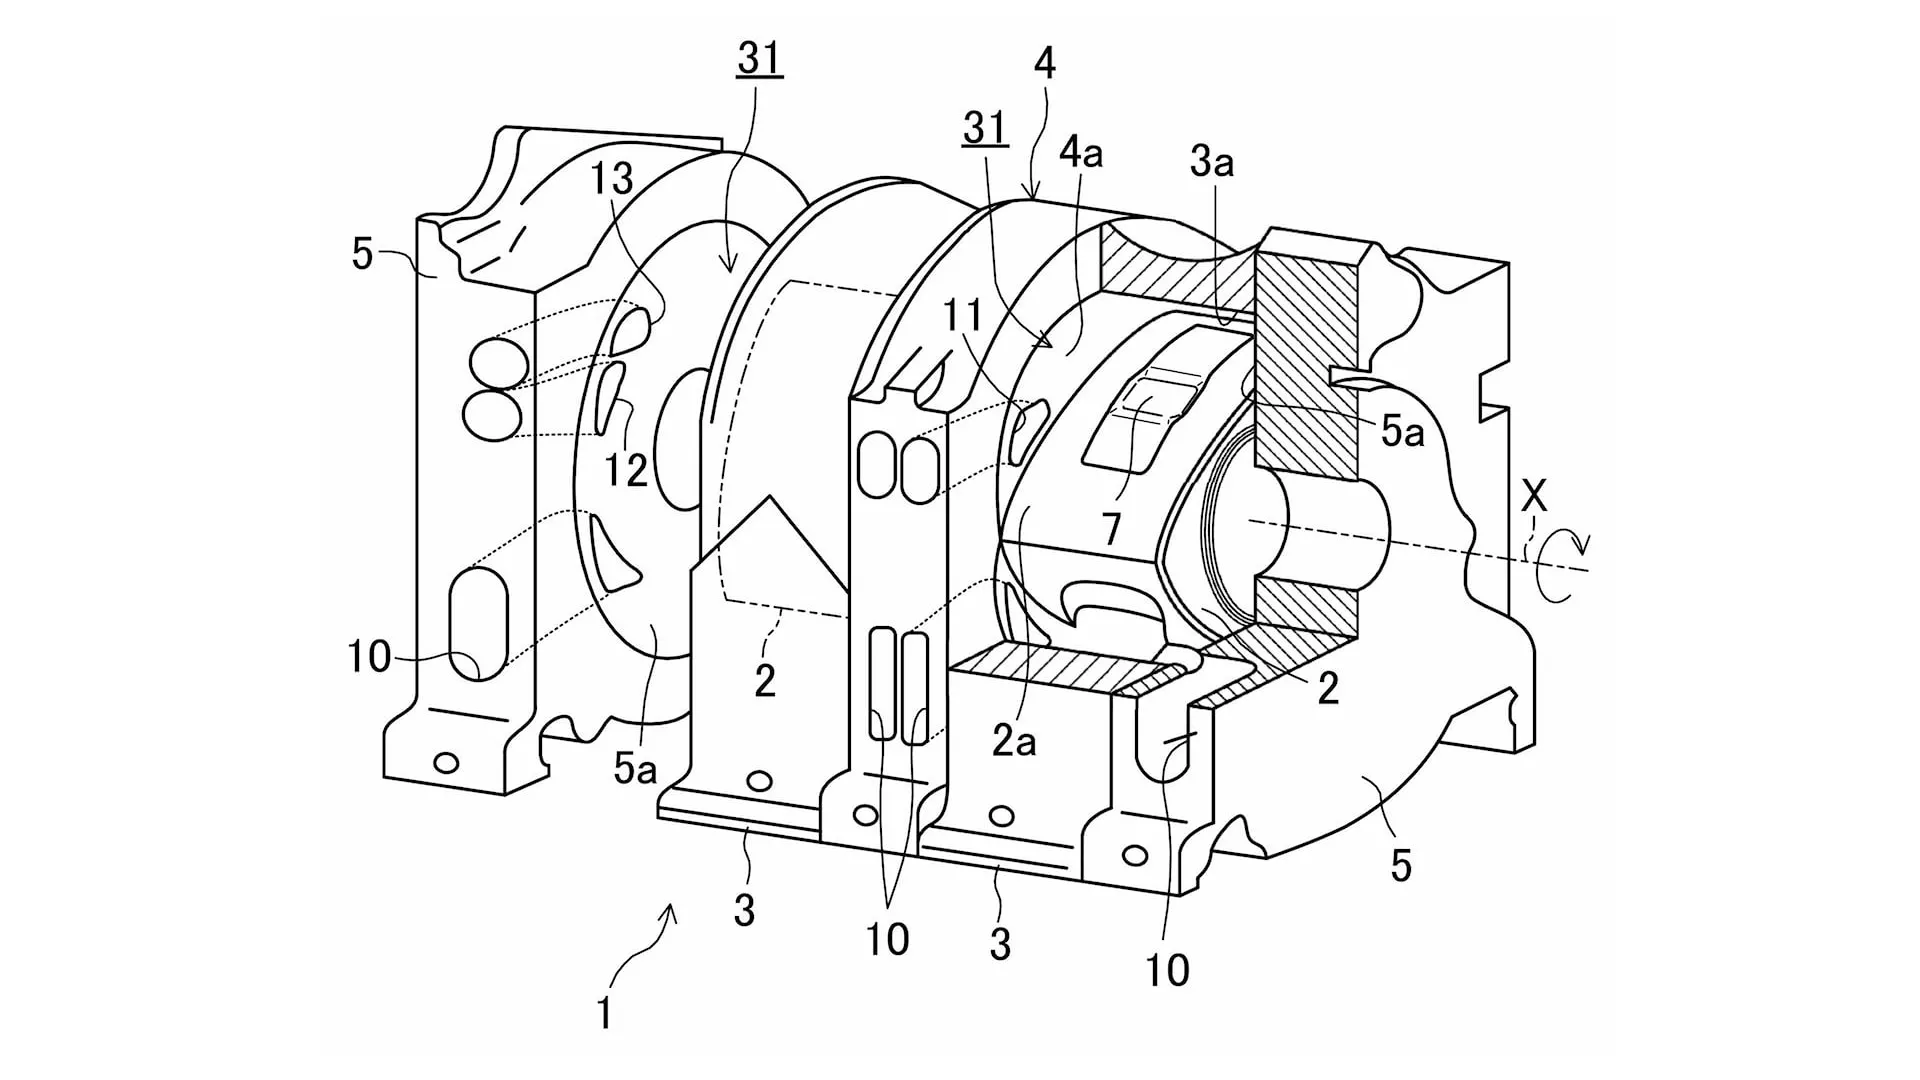 Aparecen nuevas patentes de Mazda sobre motores rotativos